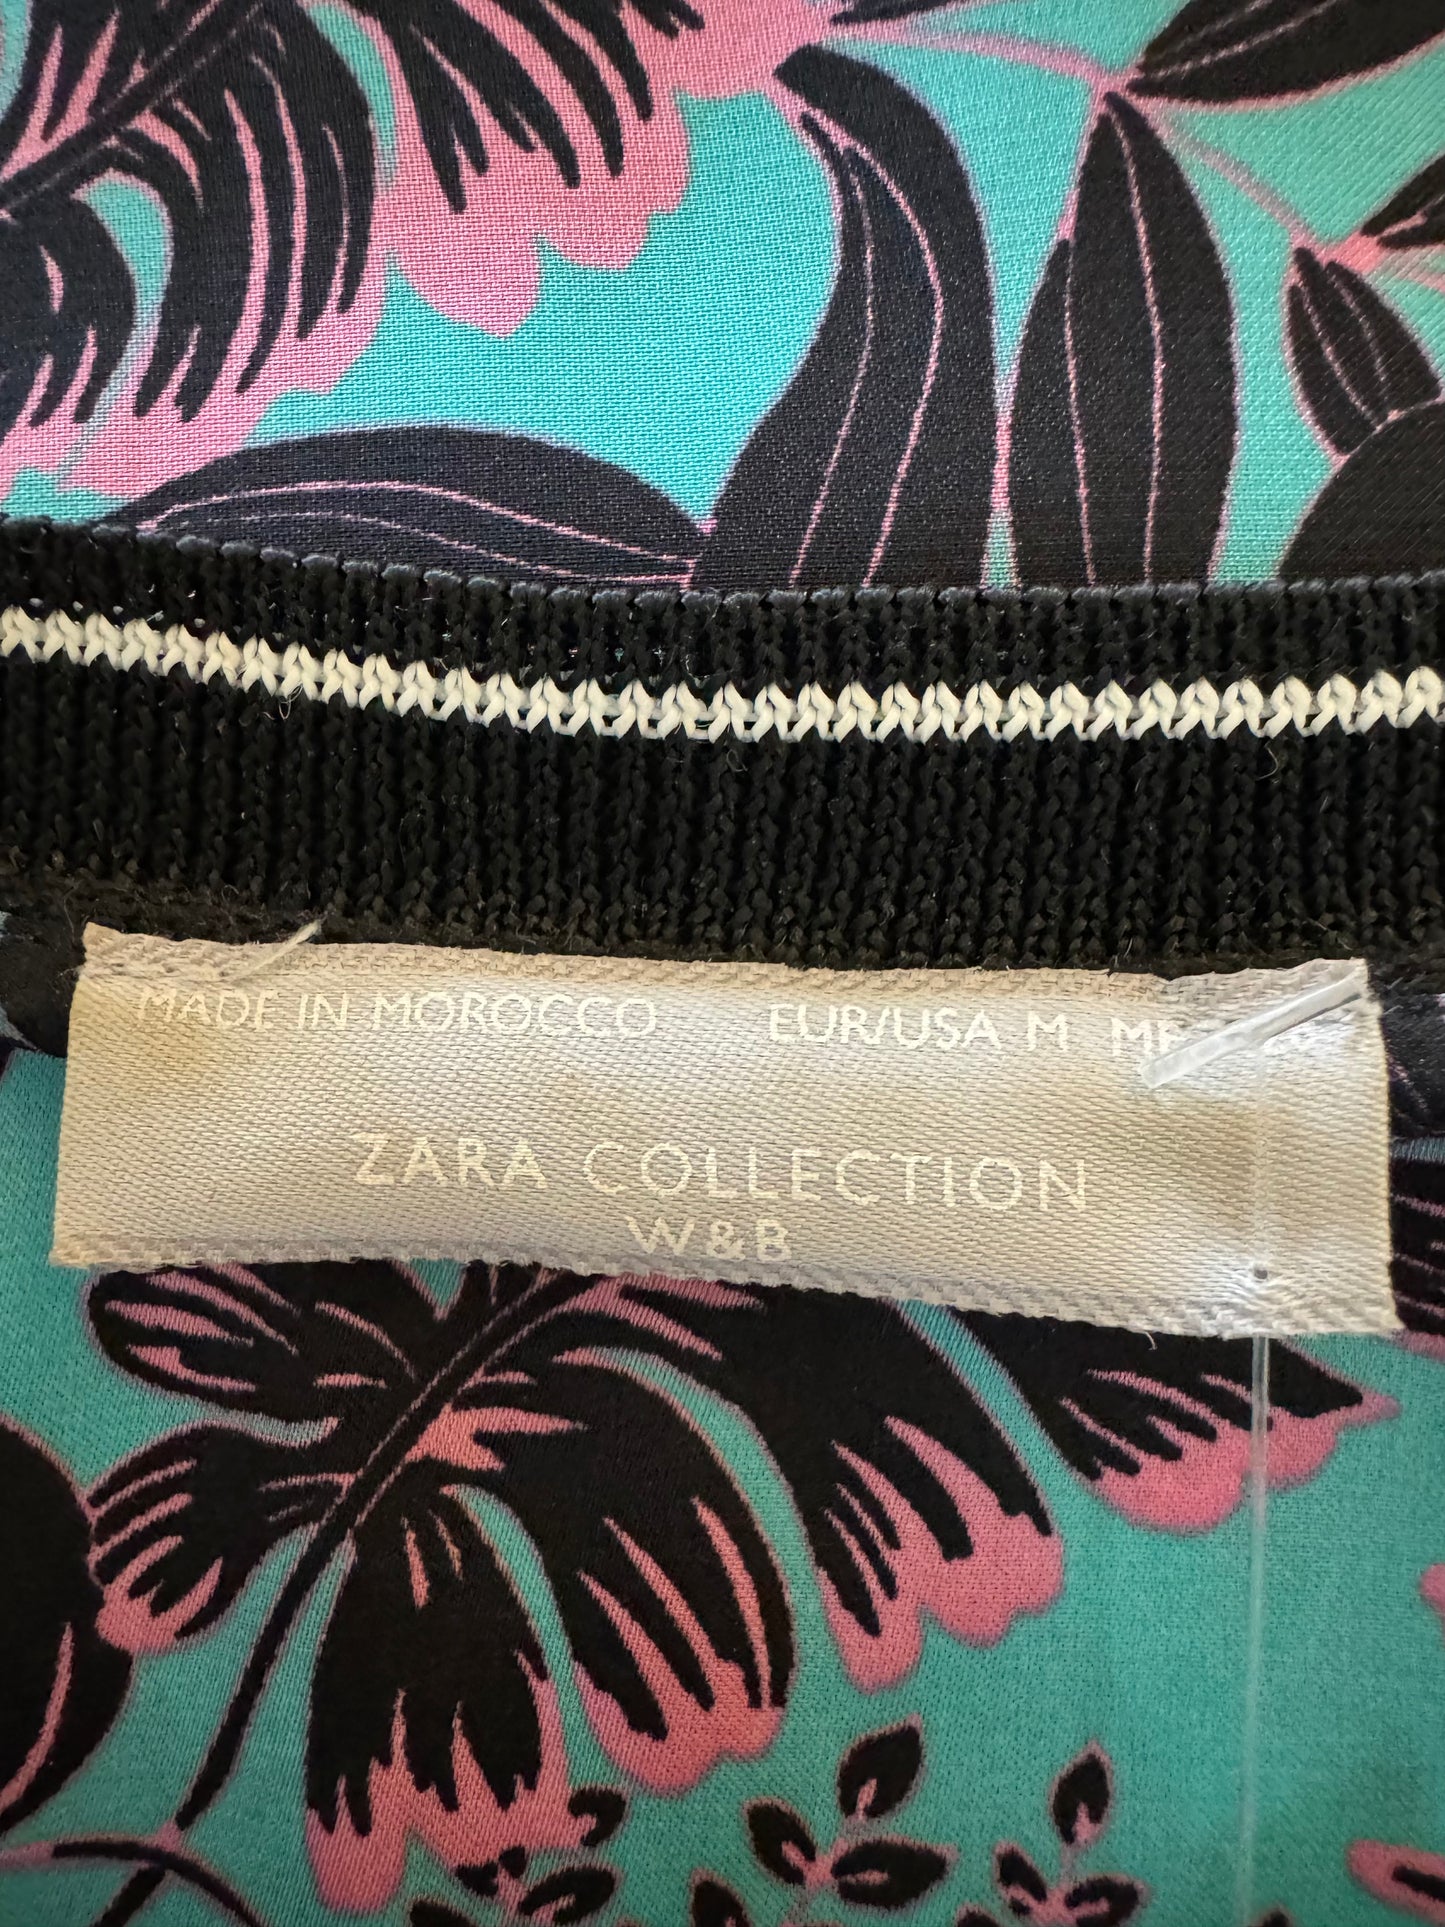 Zara Collection